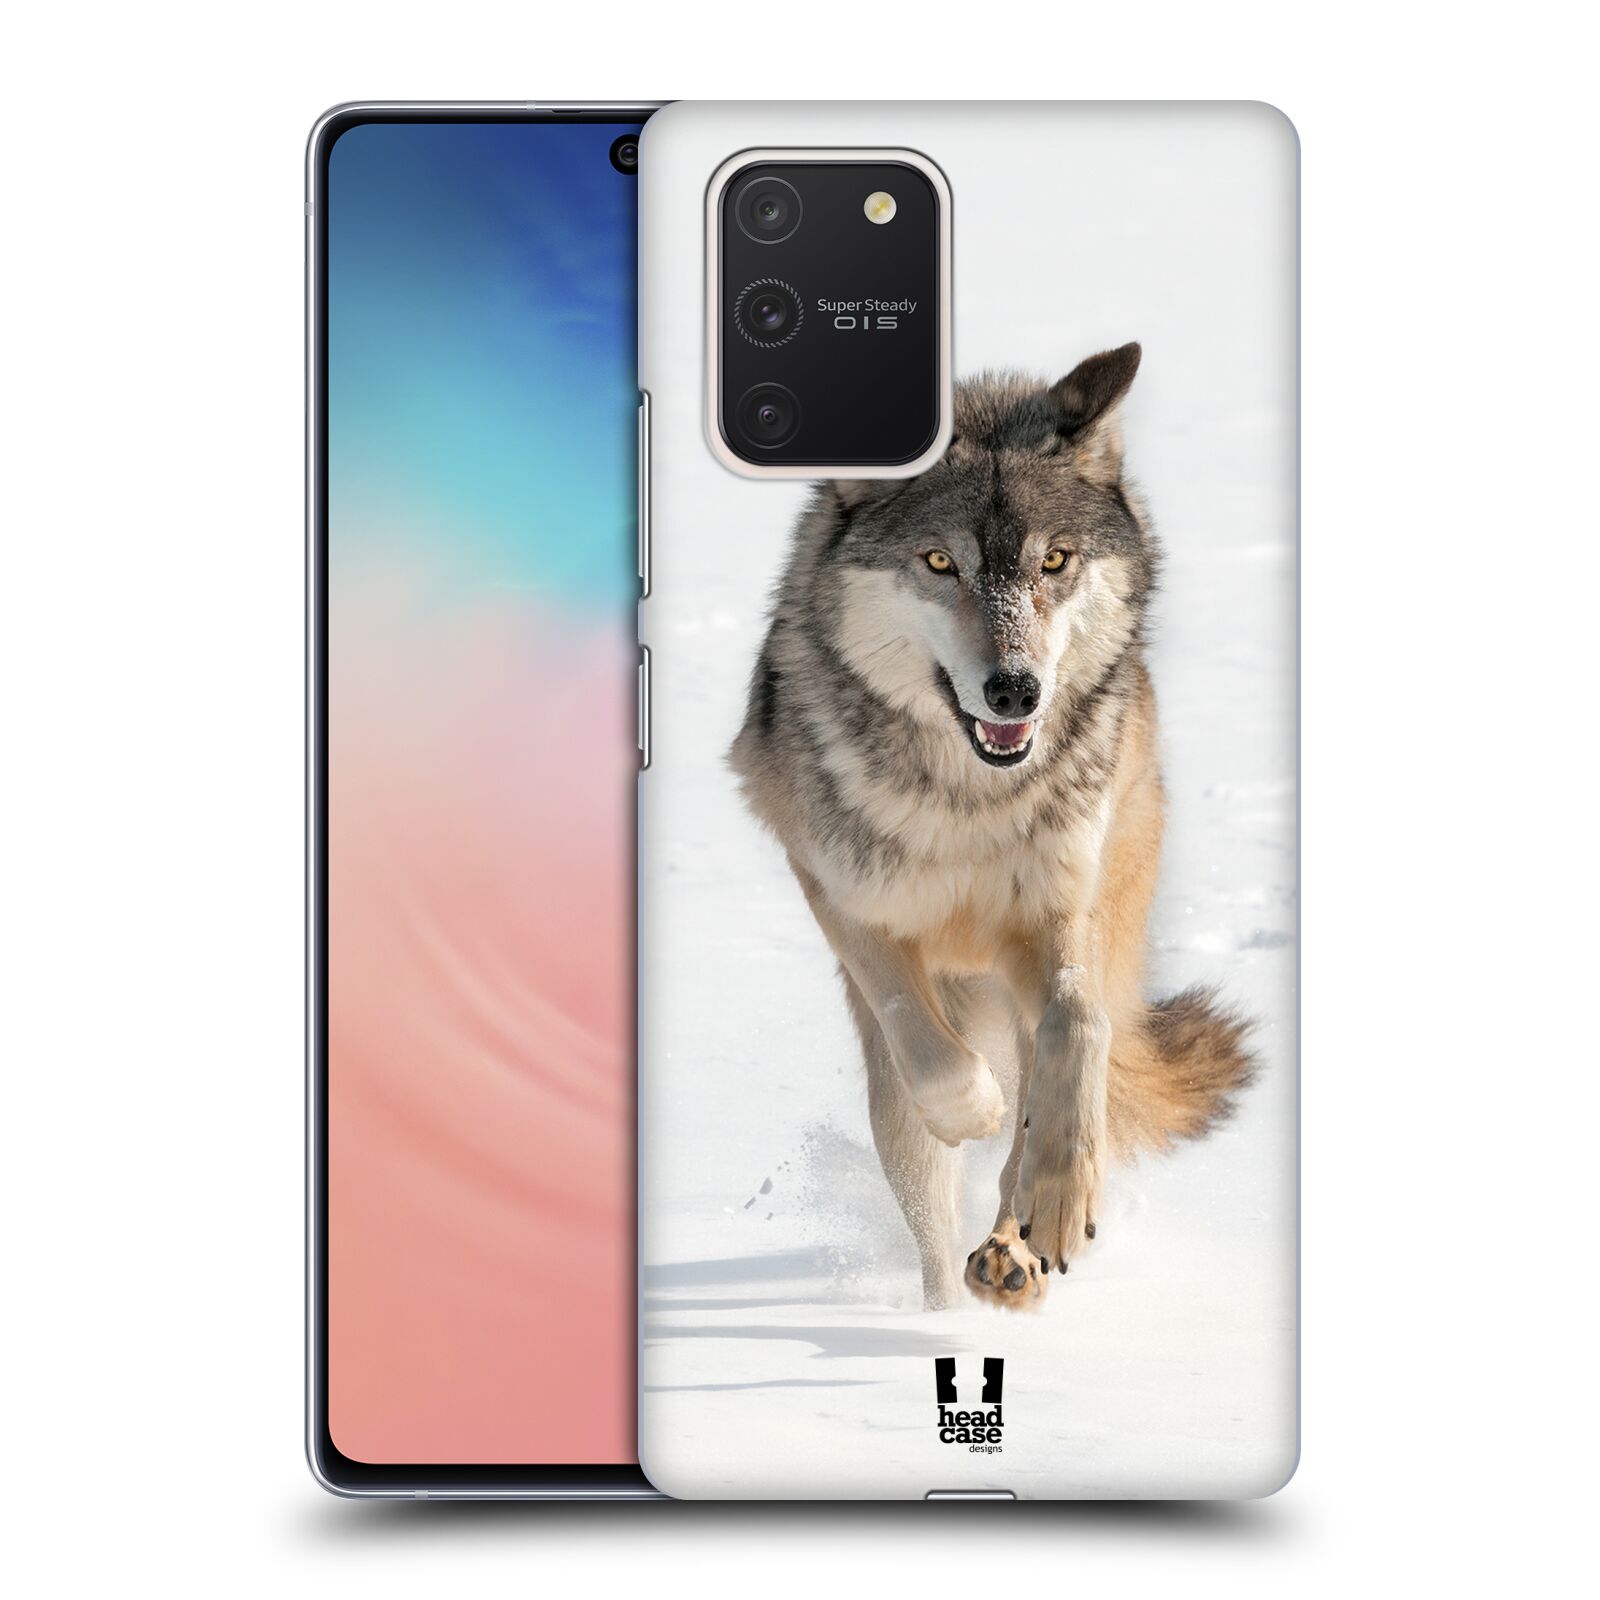 Zadní obal pro mobil Samsung Galaxy S10 LITE - HEAD CASE - Svět zvířat divoký vlk